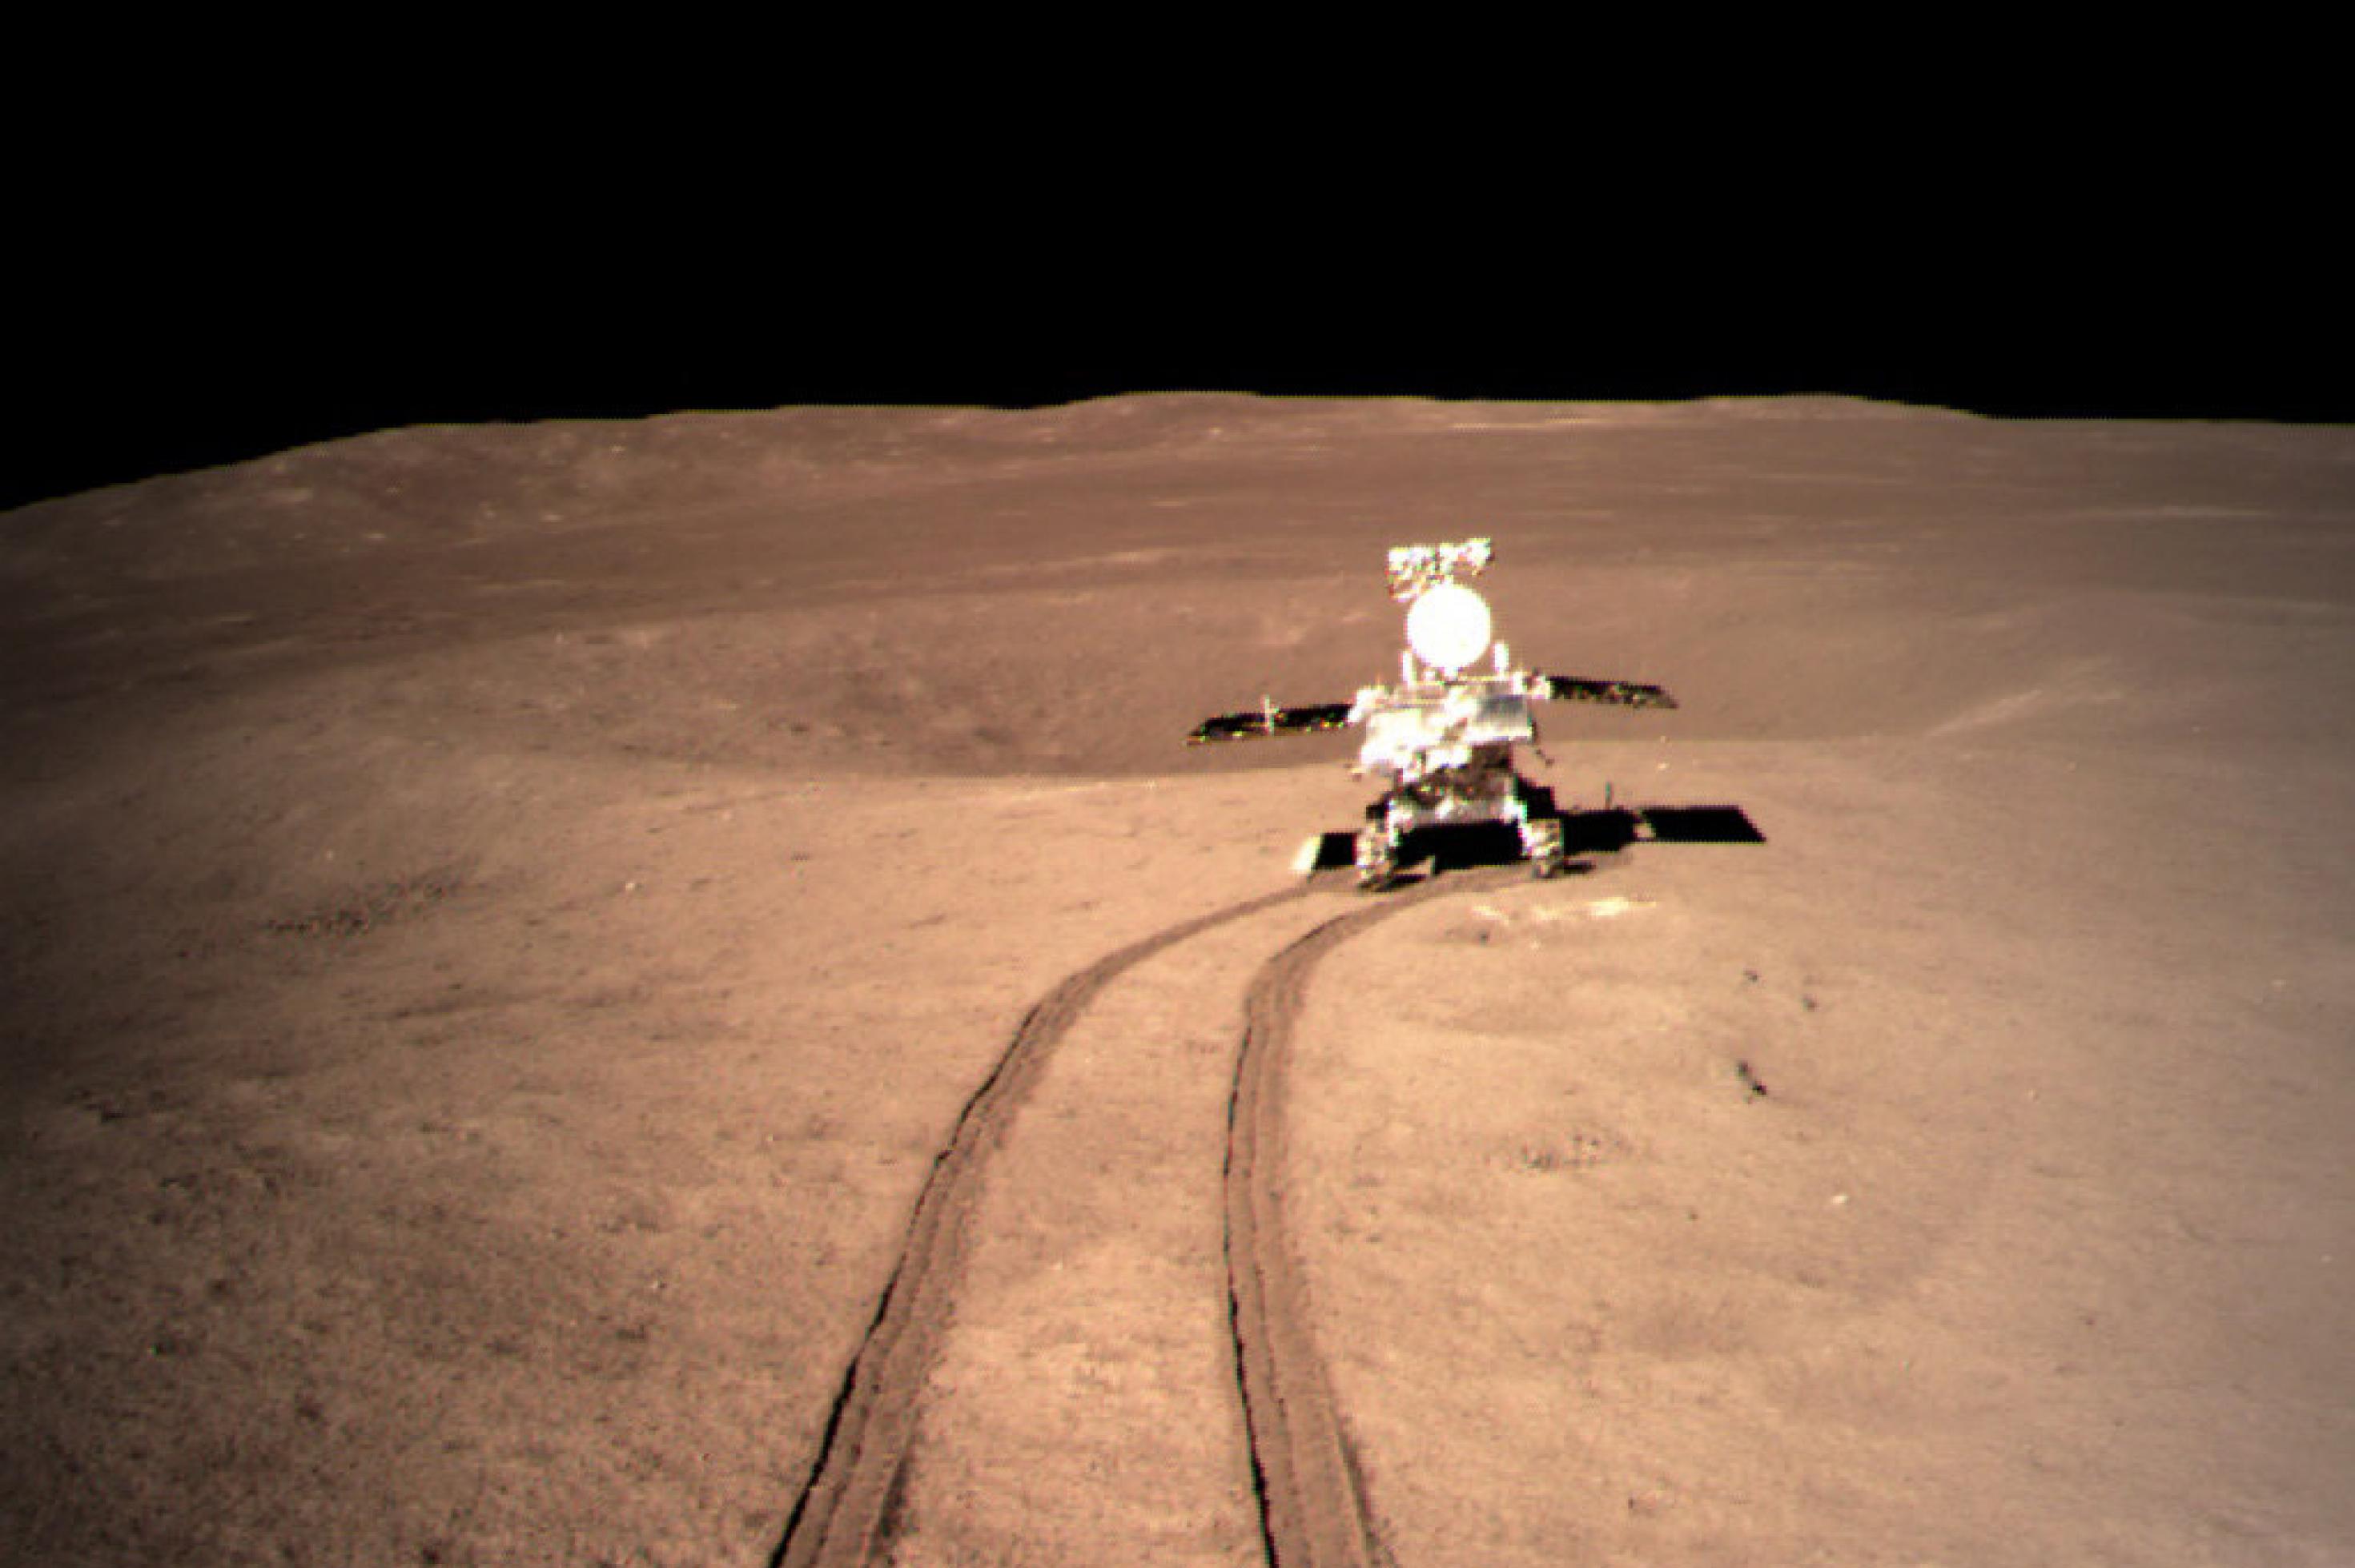 Der Rover Yutu2 fährt auf der Mondrückseite und hinterlässt eine Spur im Staub.